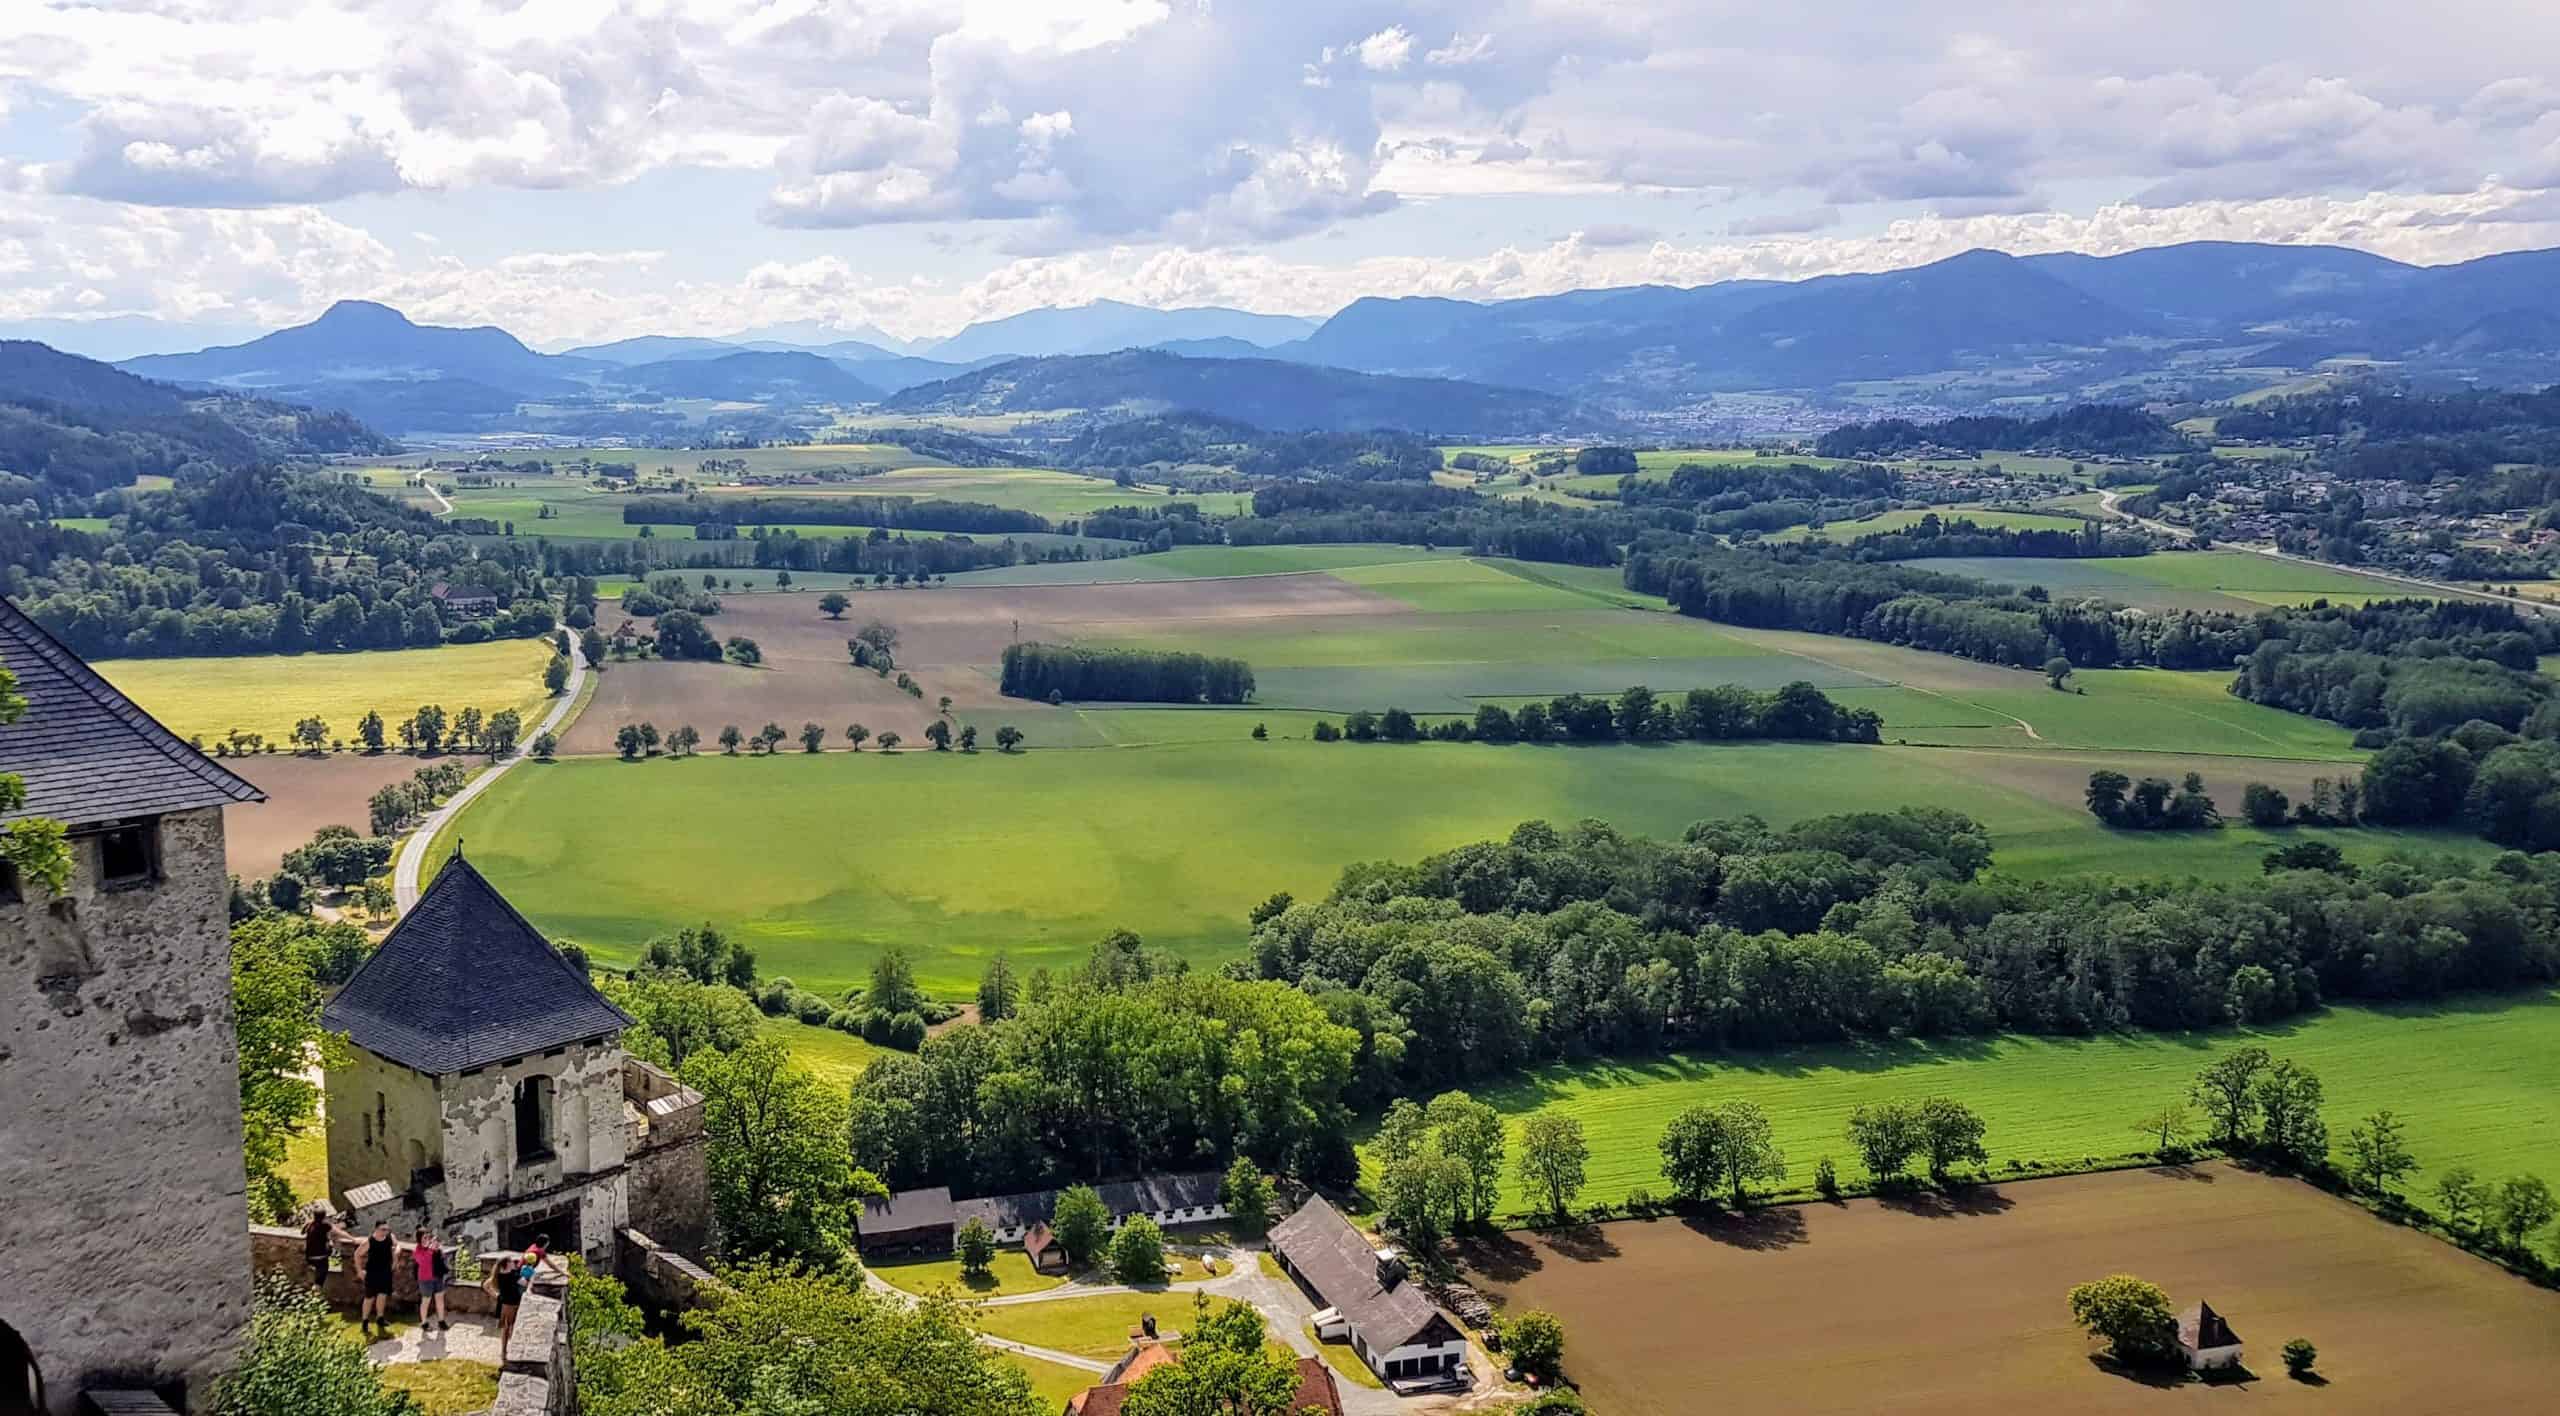 Landschaftstor mit Aussicht - eines der 14 Burgtore der Burg Hochosterwitz - Urlaub in Kärnten, Österreich